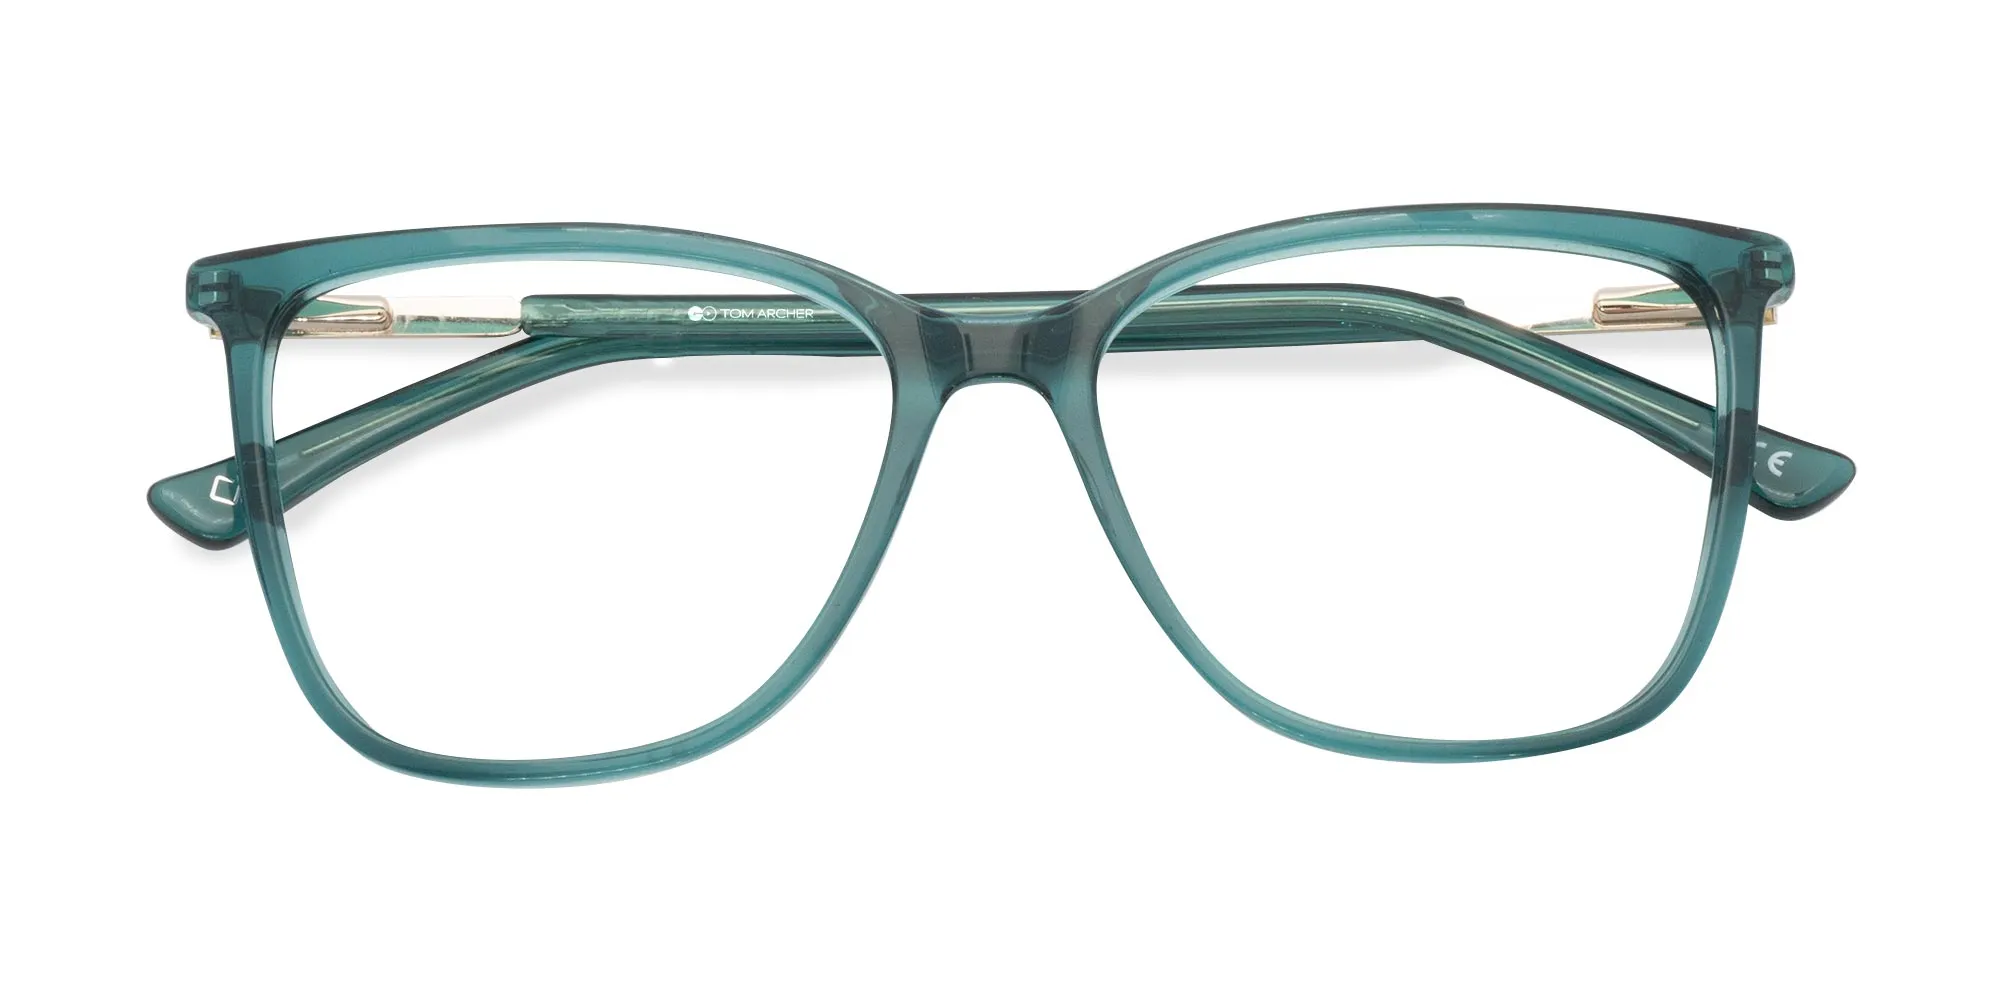 New Cat Eye Glasses-2